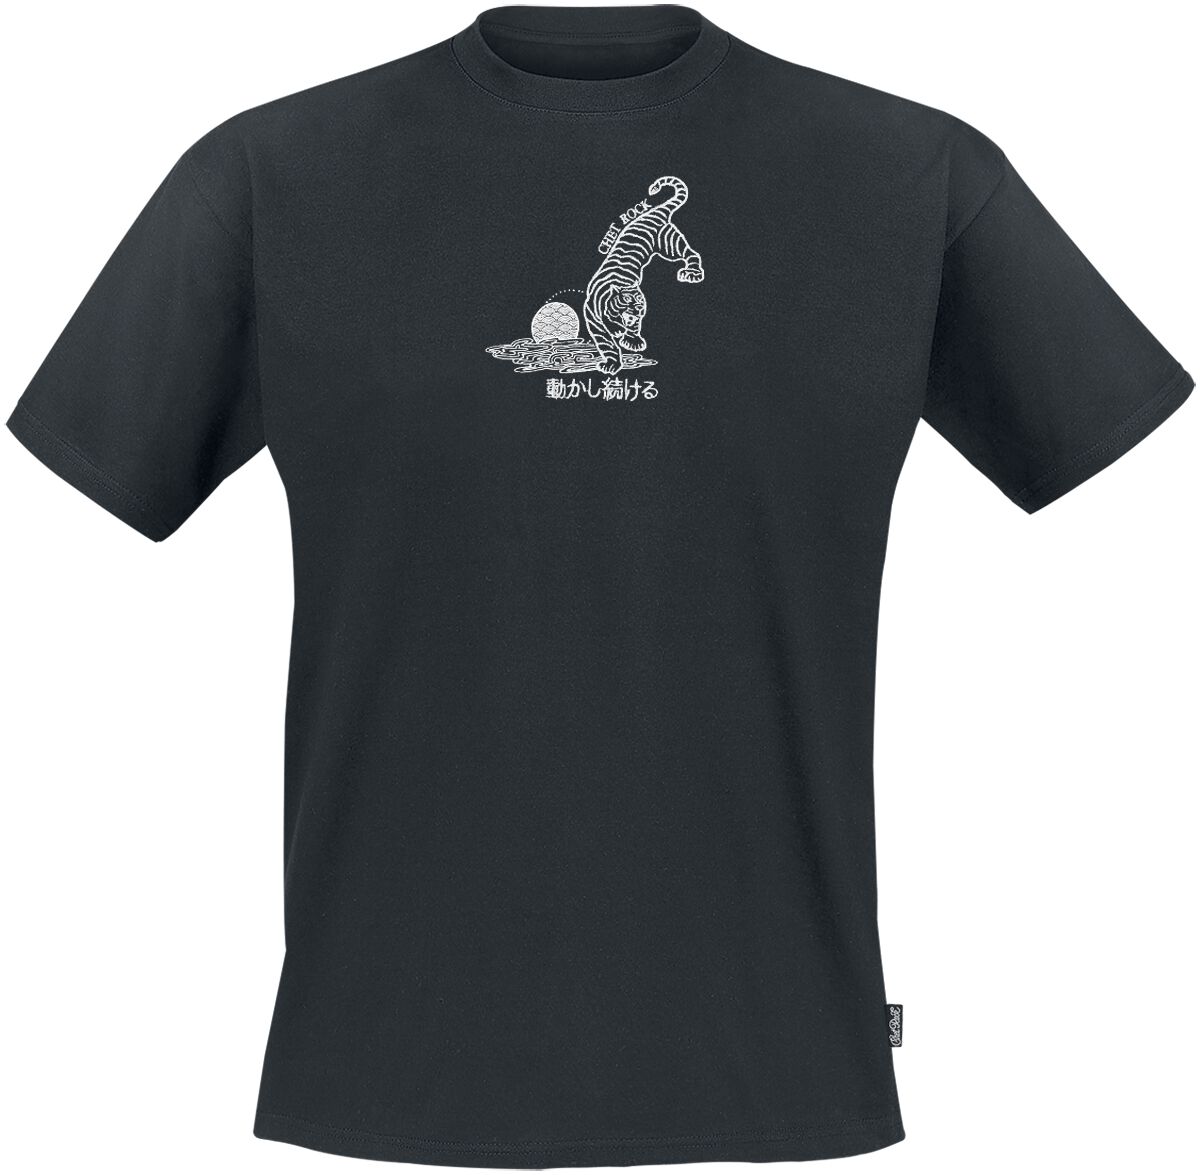 Chet Rock T-Shirt - Crouching Tiger - S bis XXL - für Männer - Größe XXL - schwarz